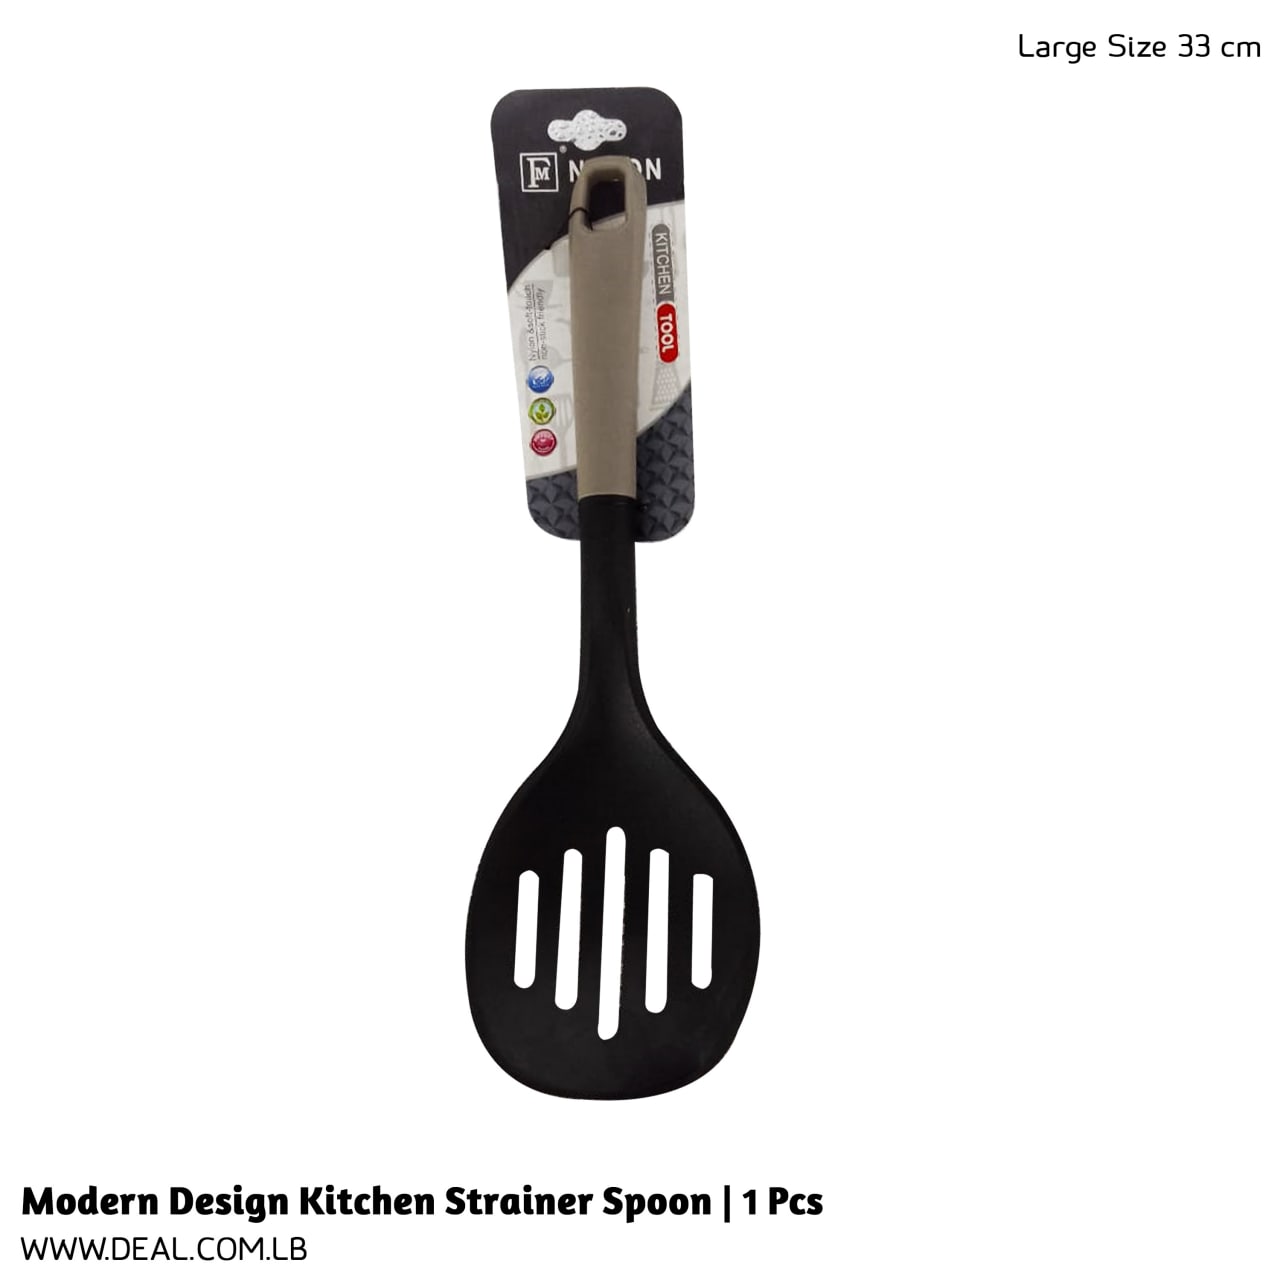 Modern Design Kitchen Strainer Spoon | 1 Pcs